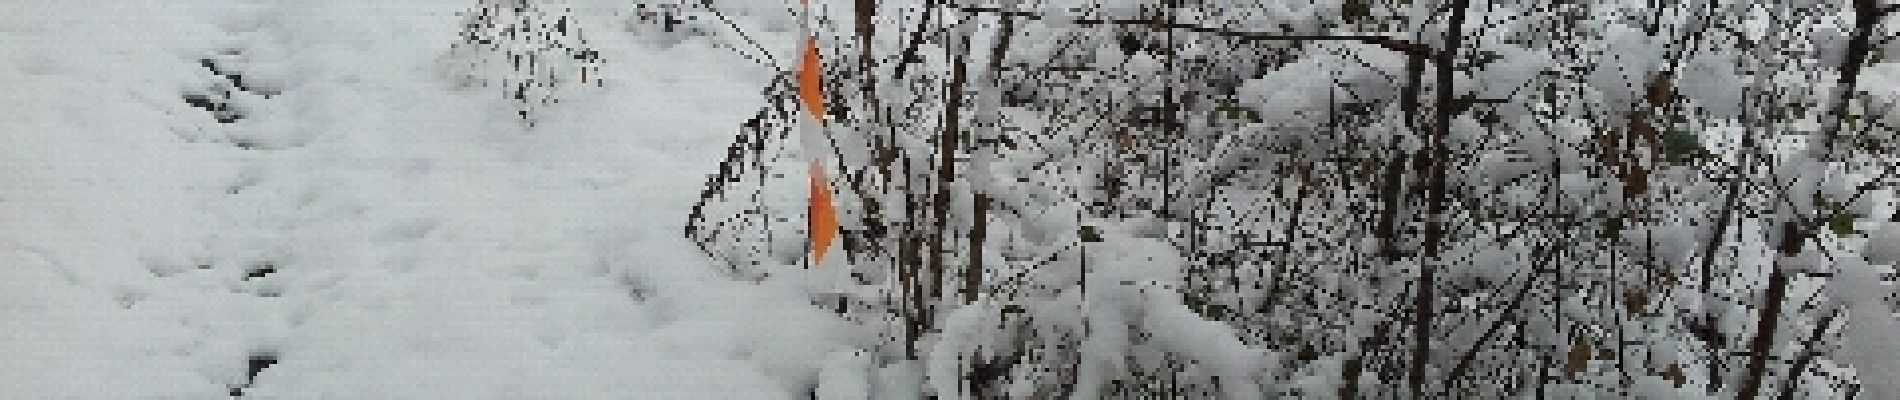 Tocht Sneeuwschoenen Archettes - le chenat raquettes - Photo